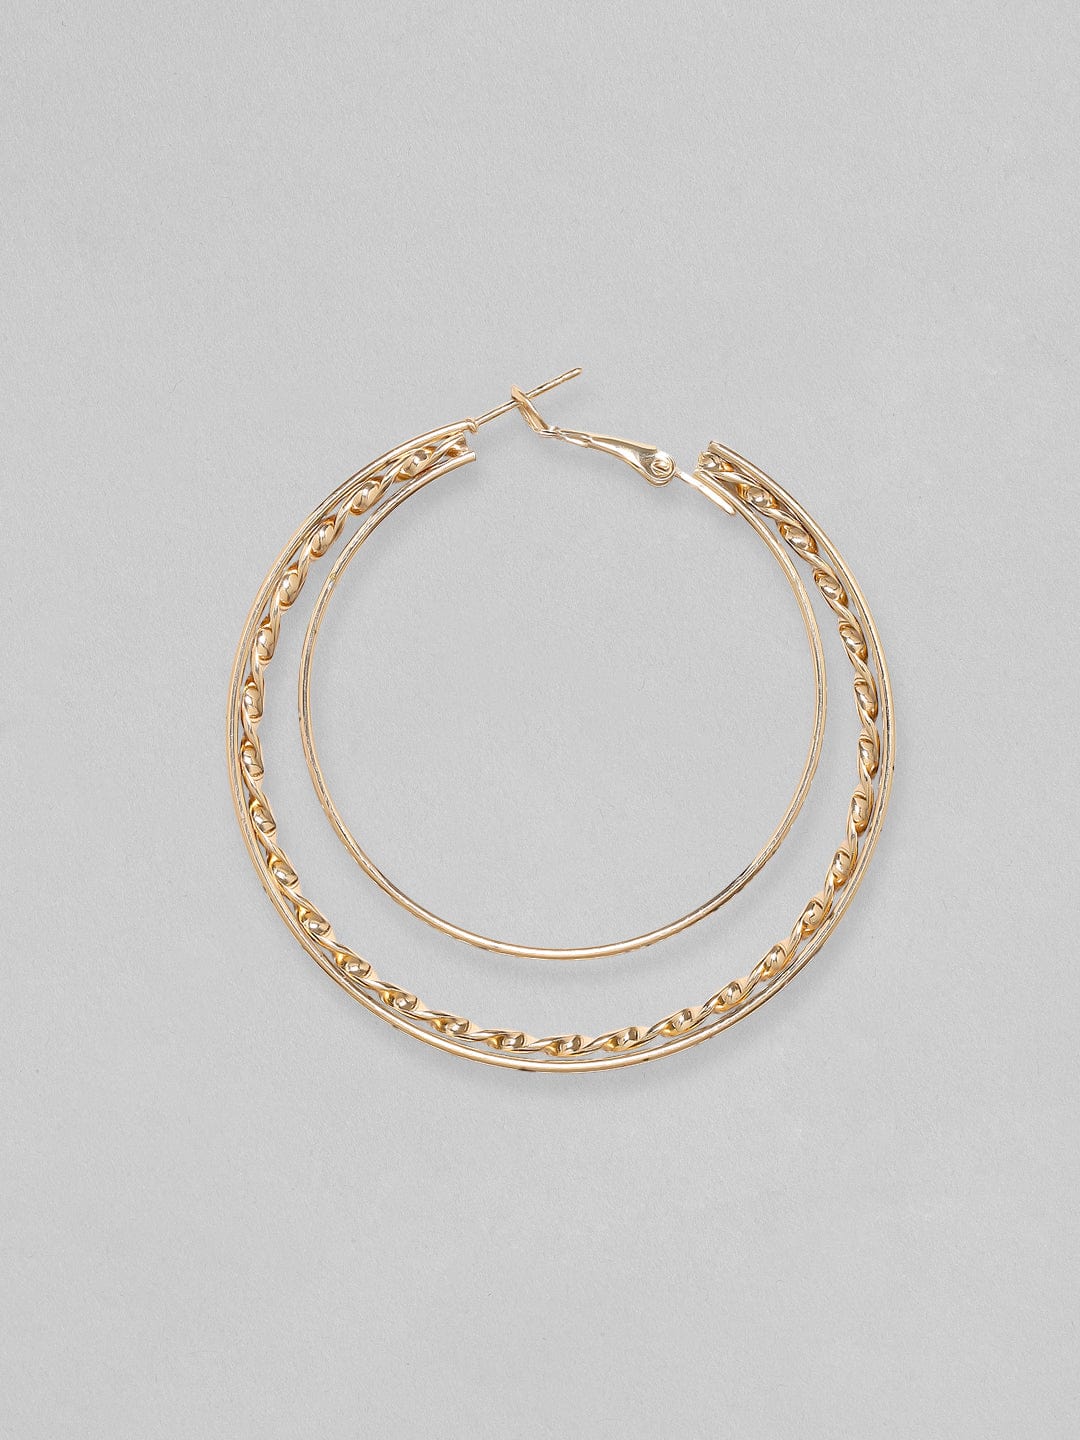 Rubans Voguish Gold-Plated Circular Hoop Earrings Earrings